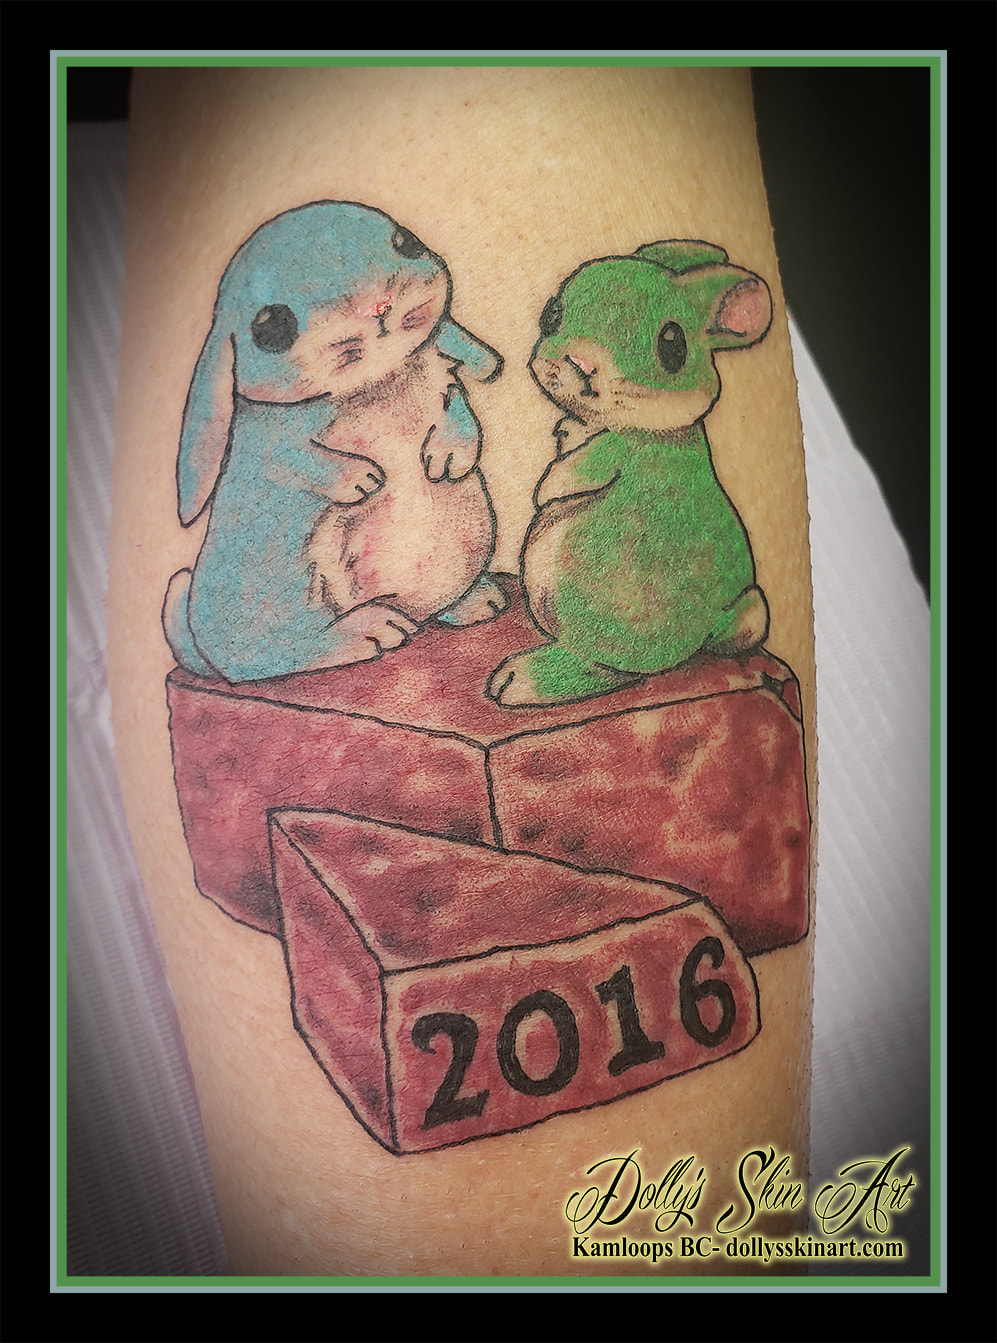 bunny brick tattoo rabbit 2016 colour blue green brown black numerals tattoo kamloops dolly's skin art